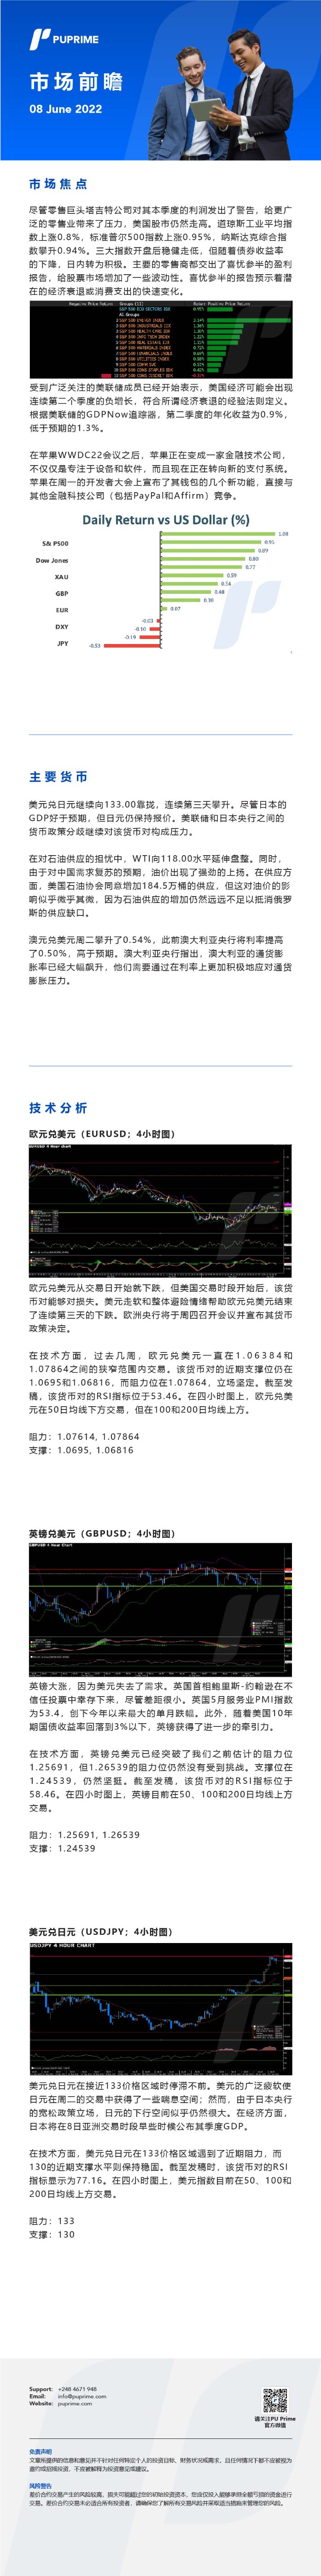 08062022 Daily Market Analysis__CHN.jpg